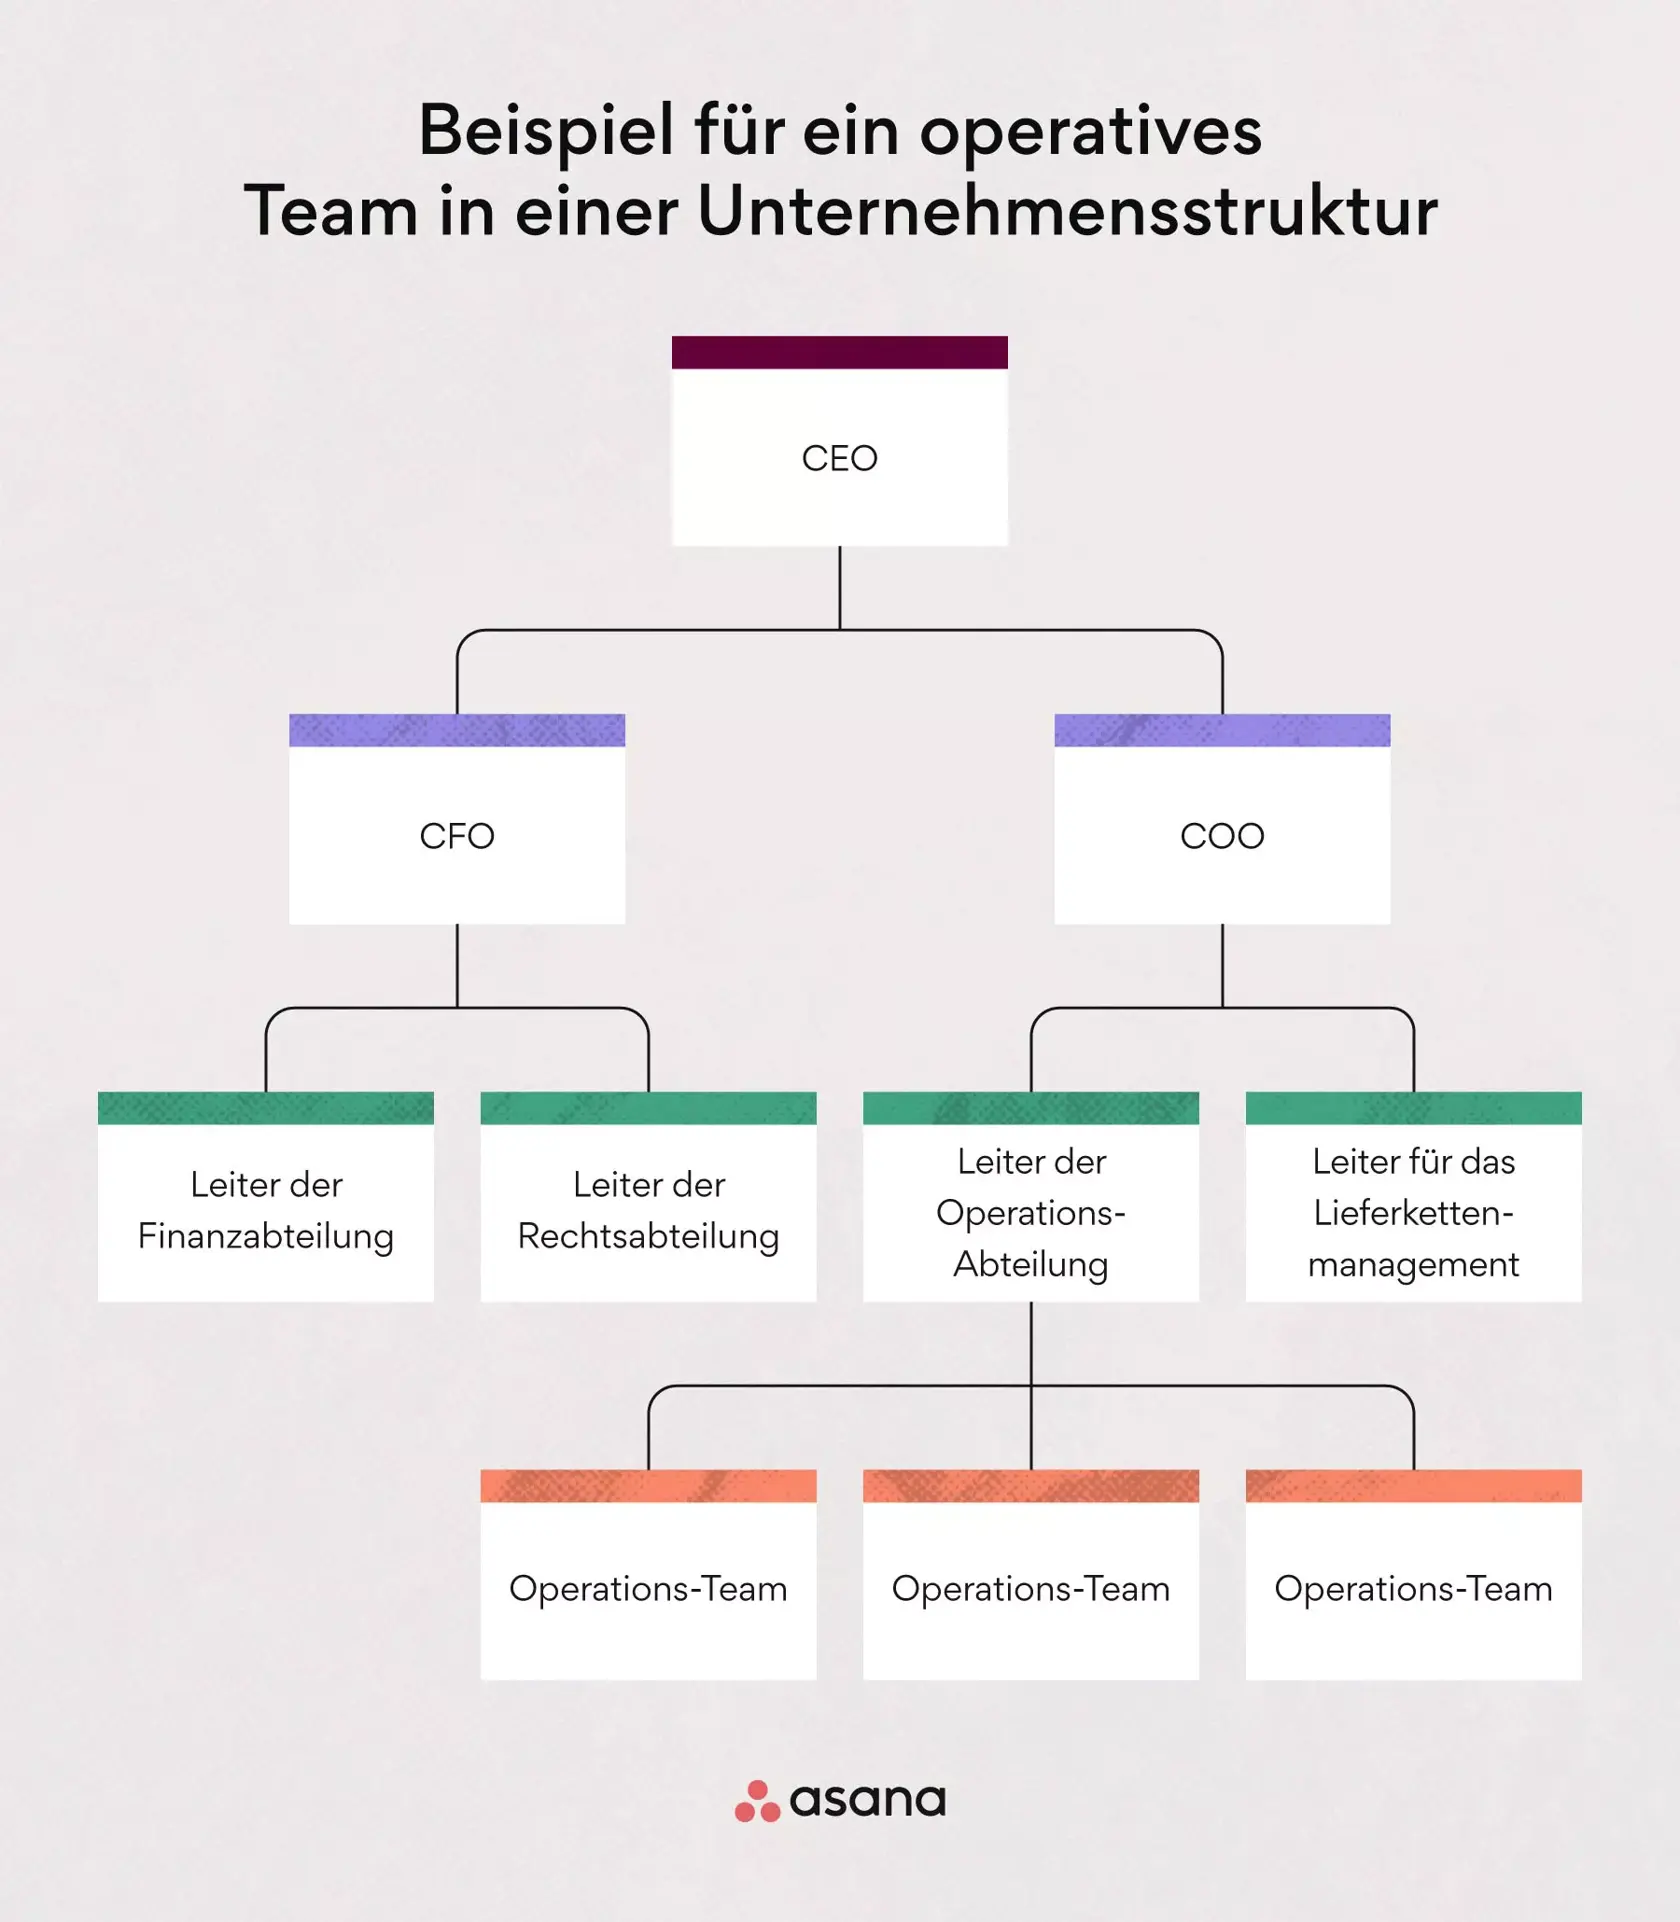 Beispiel für ein operatives Team in einer Unternehmensstruktur